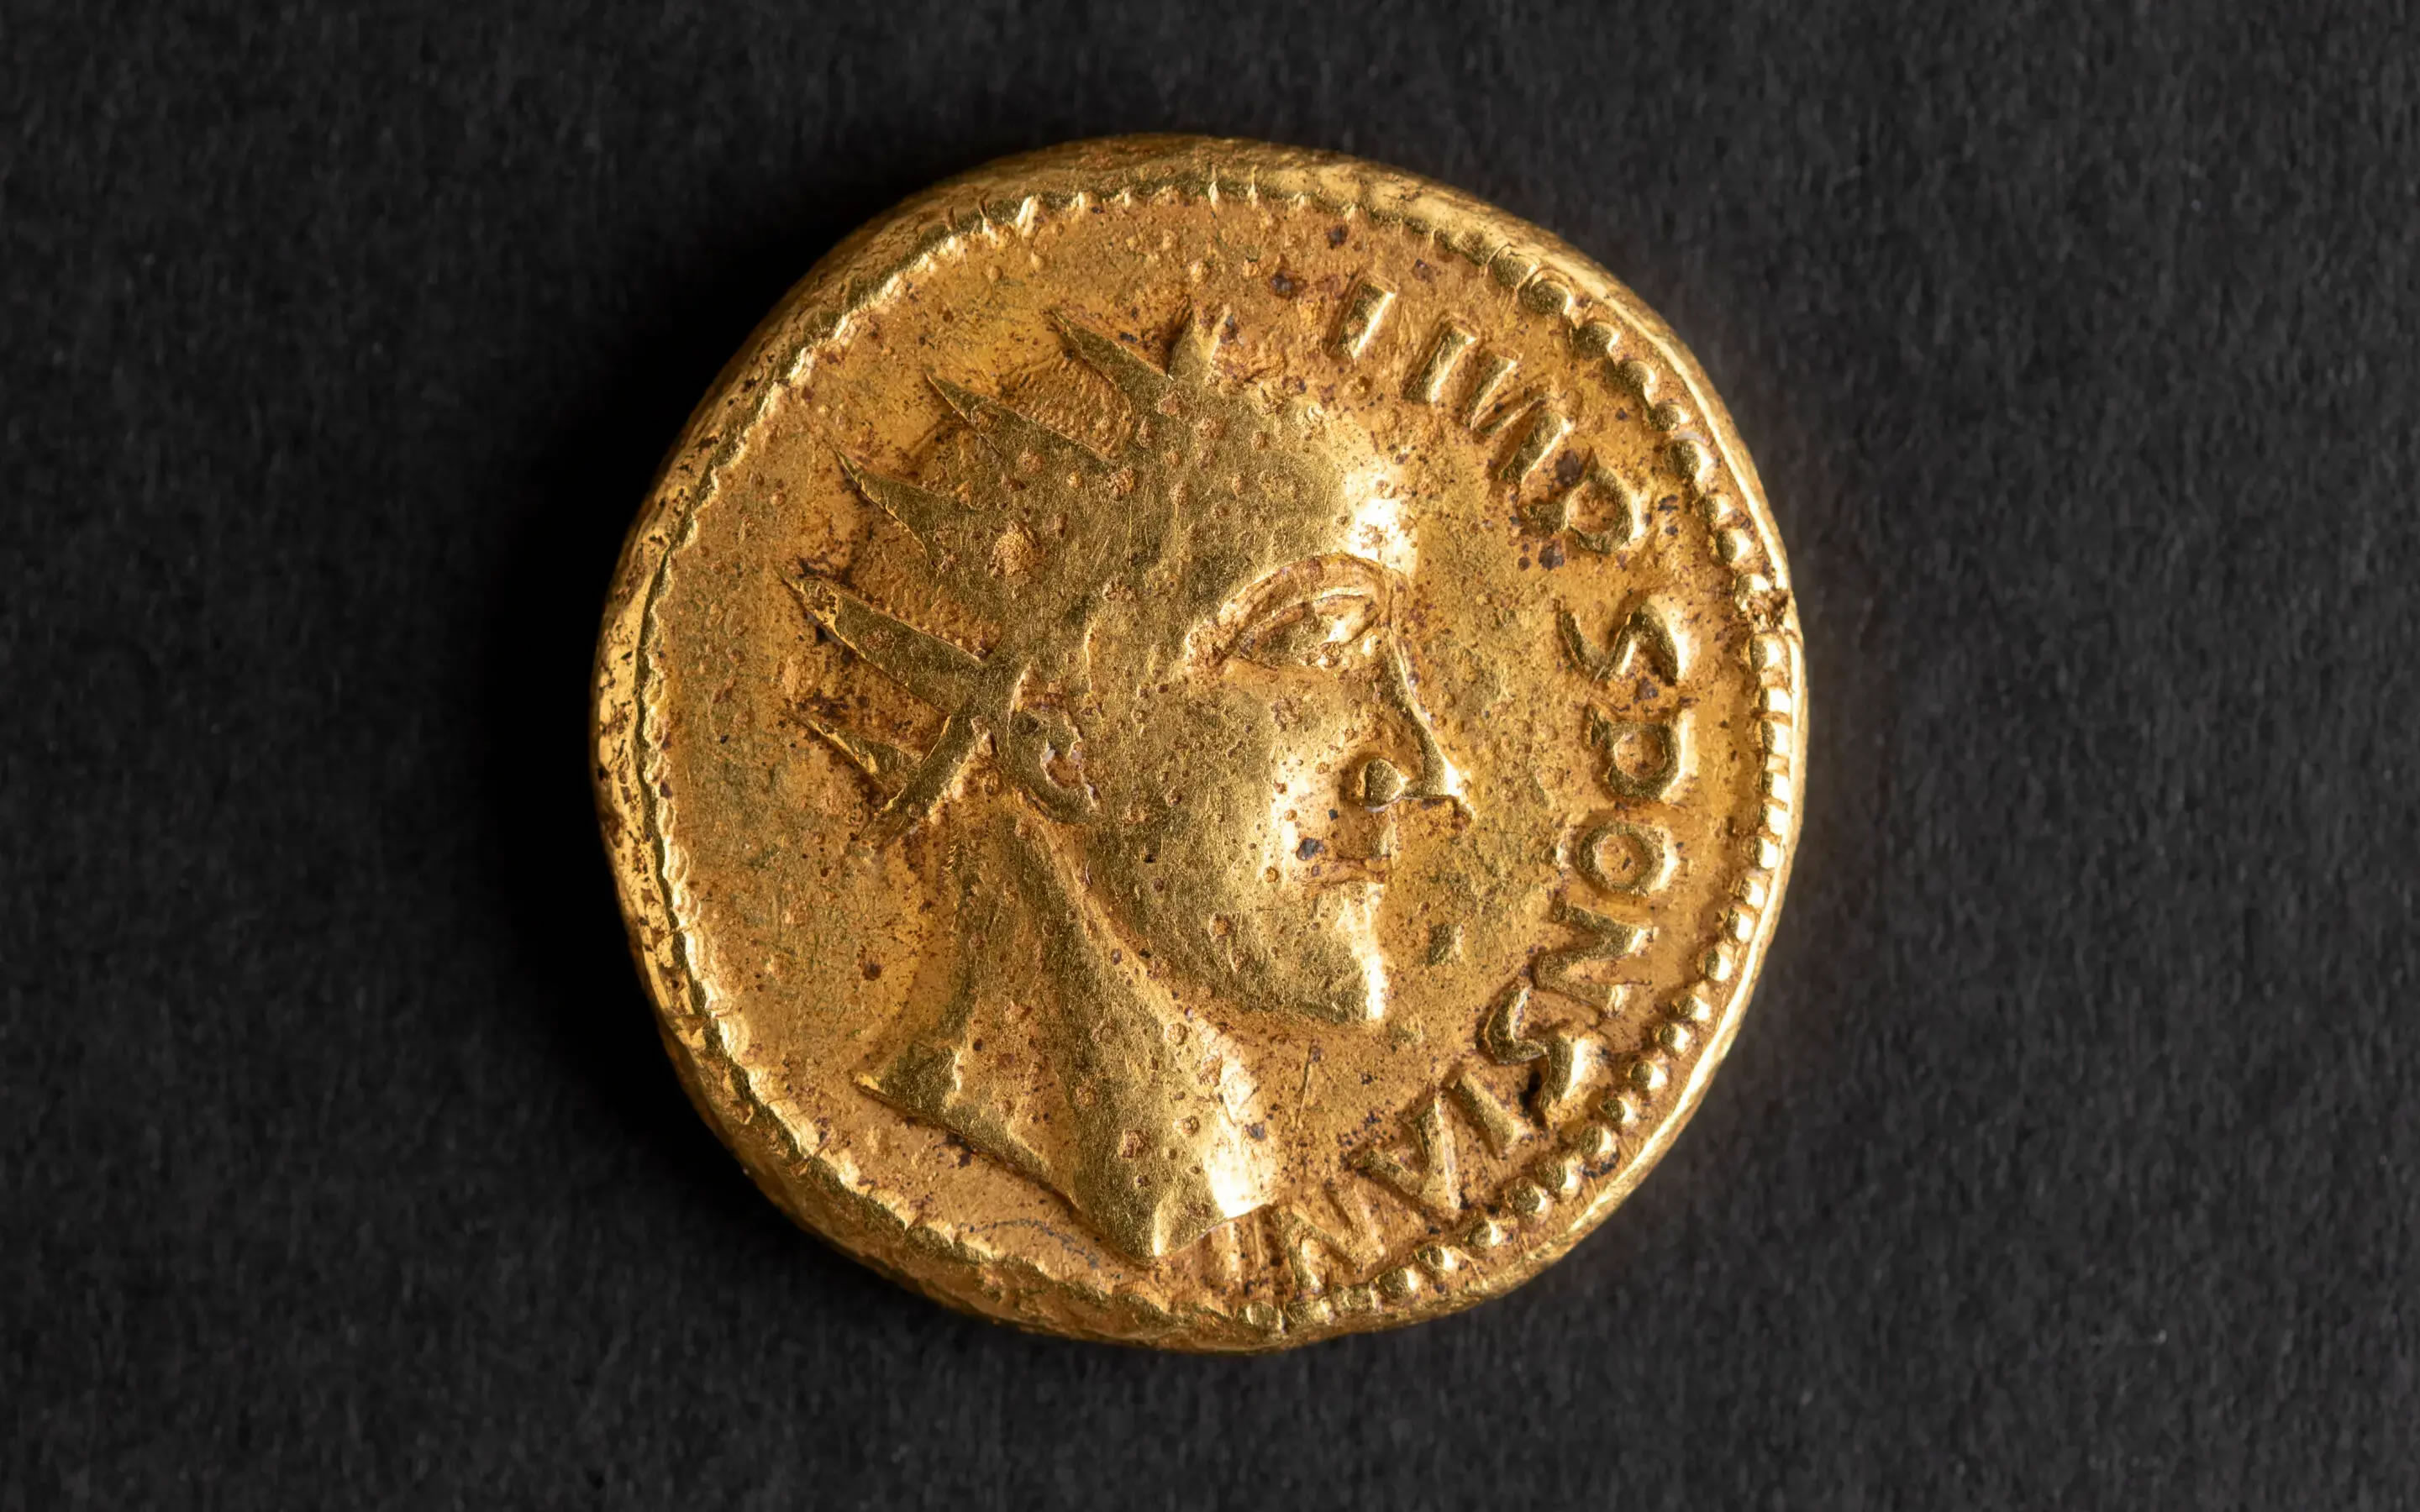 1713年在特兰西瓦尼亚出土的古钱币的揭示了一位消失在历史中的罗马皇帝